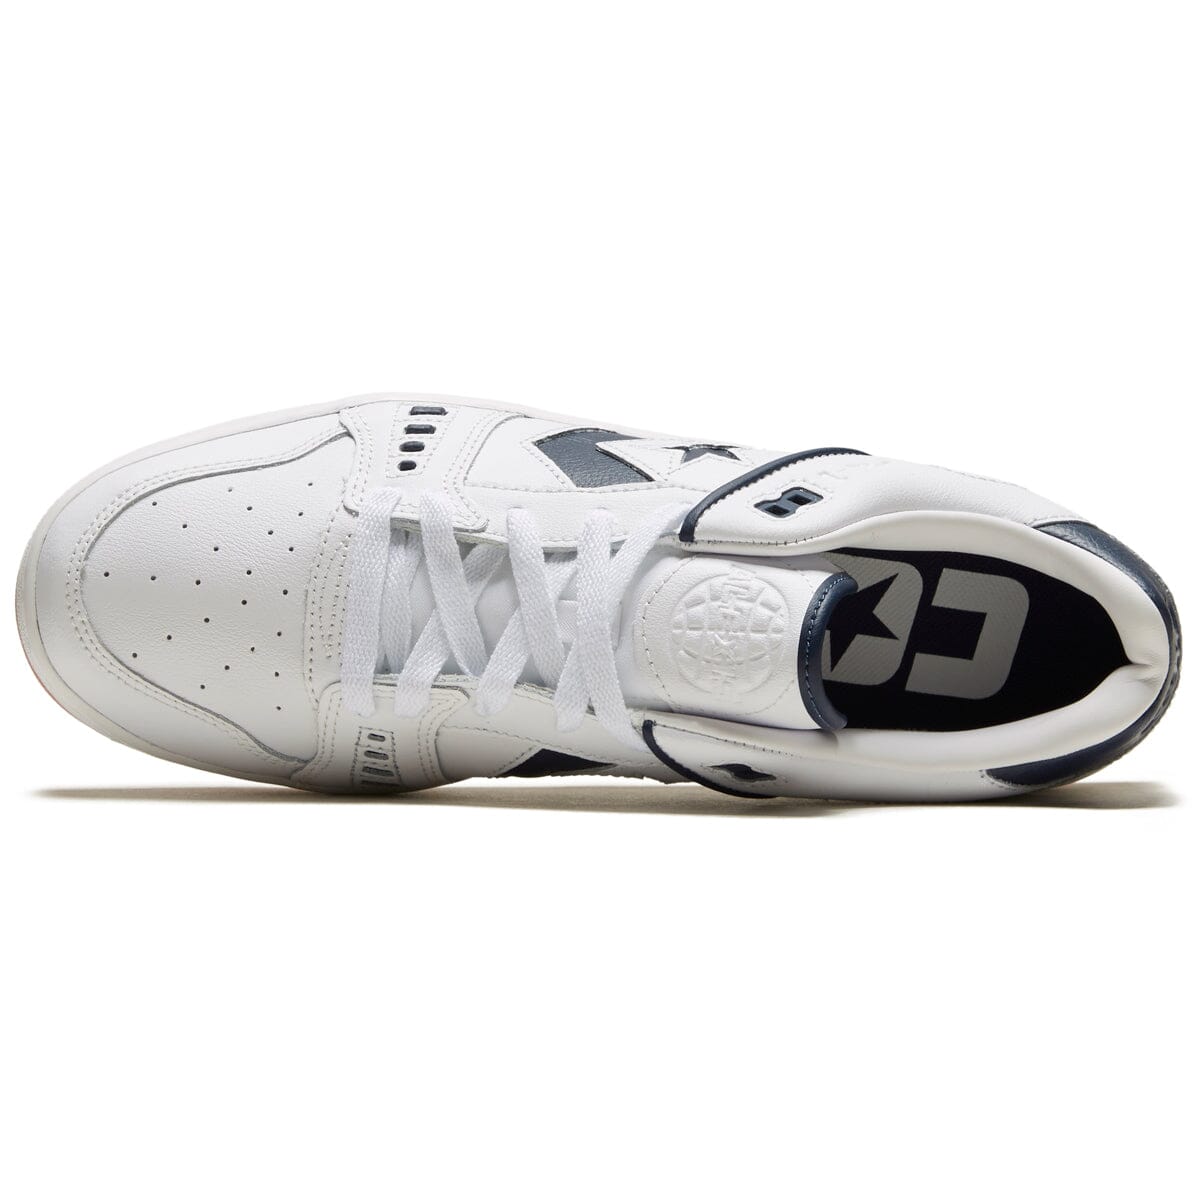 Men's shoes Converse As-1 Pro White/ Fir/ White